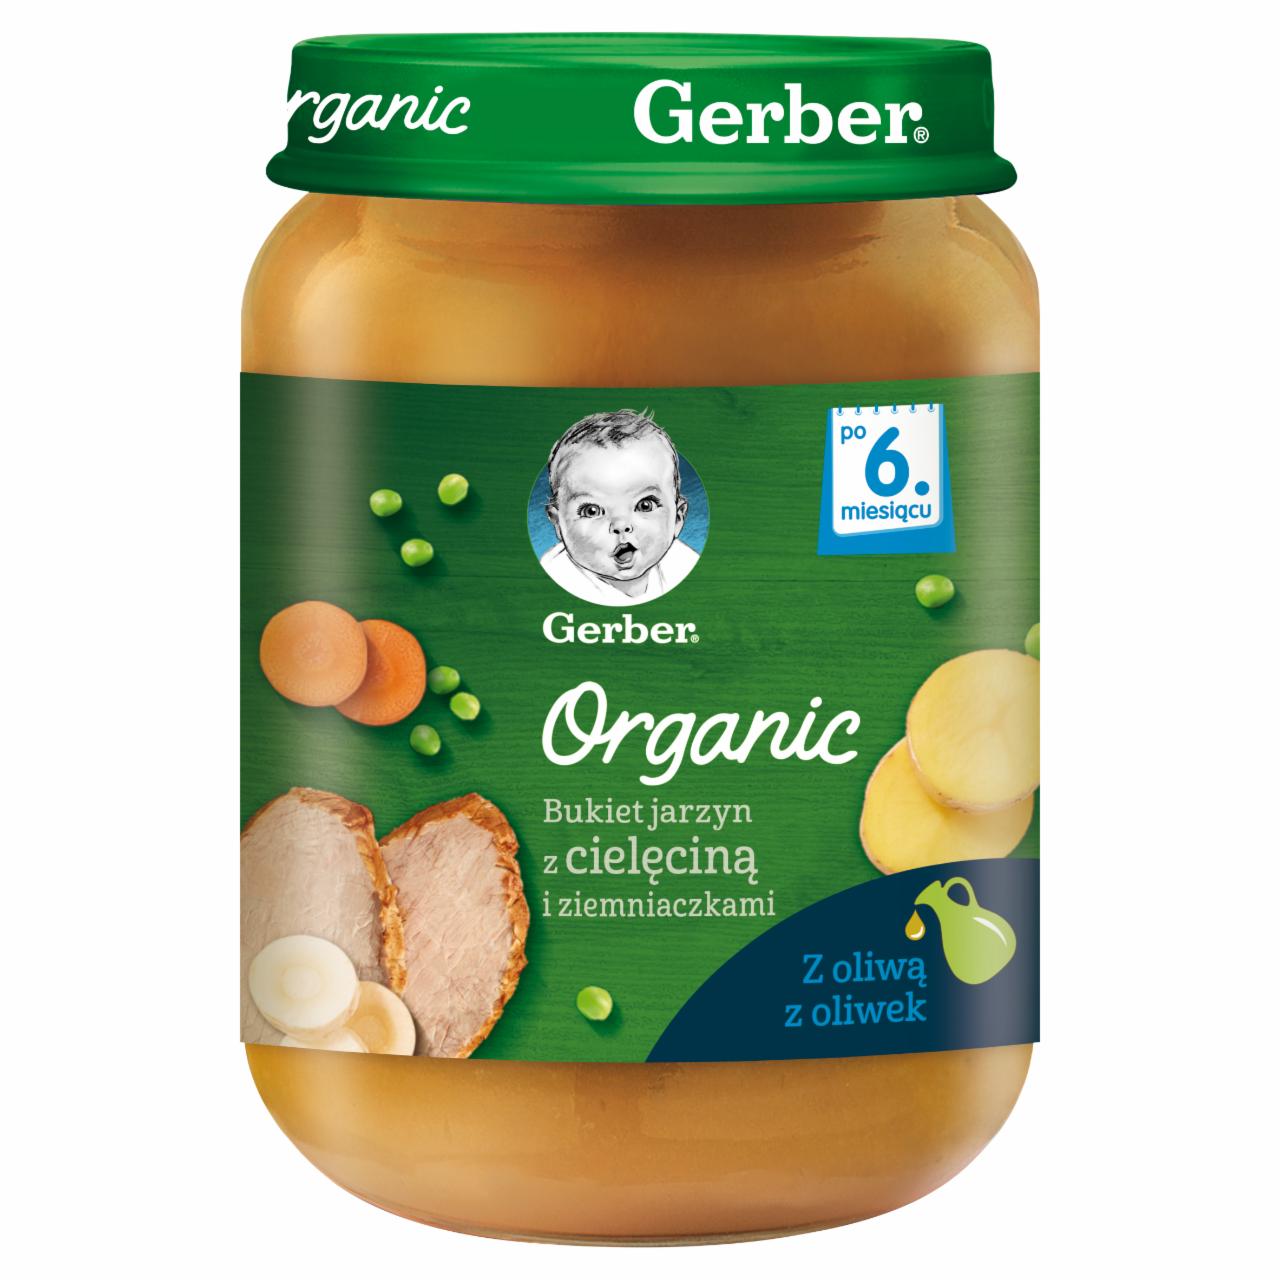 Zdjęcia - Gerber Organic Bukiet jarzyn z cielęciną i ziemniaczkami dla niemowląt po 6. miesiącu 190 g